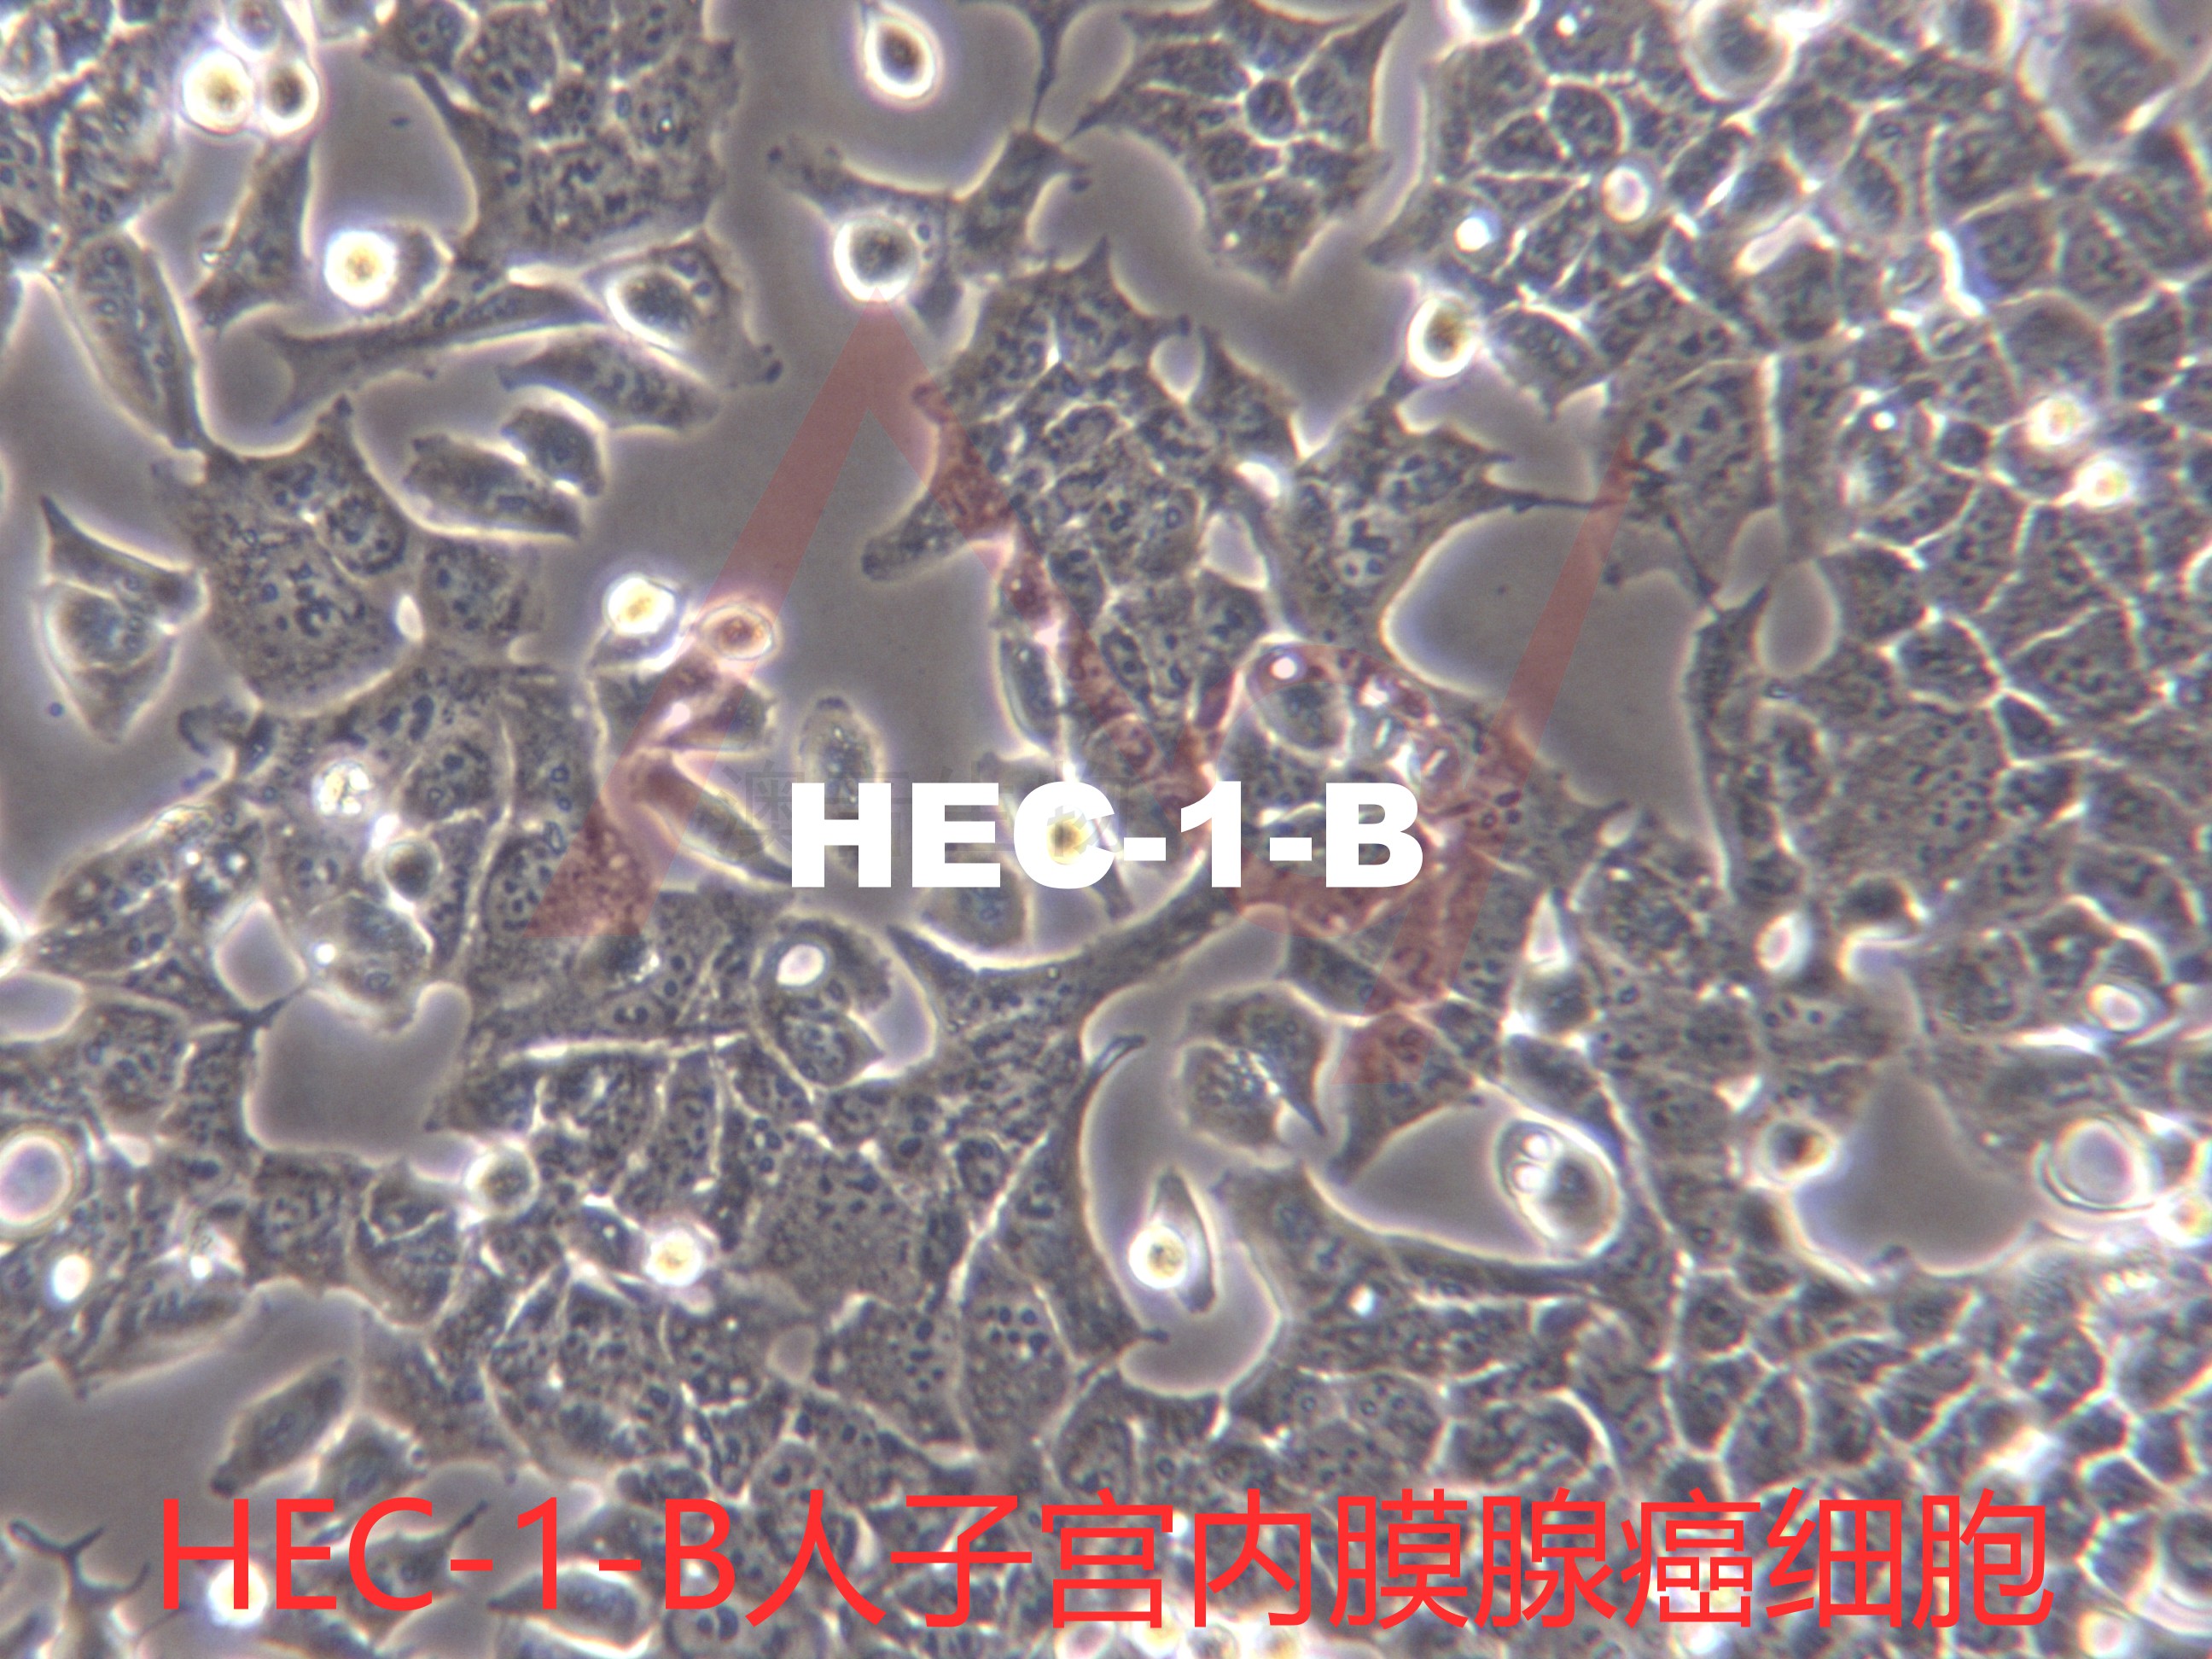 HEC-1-B【Hec-1-B; HEC-1B; Hec-1b; HEC1-B; HEC1B; Hec1B】子宫内膜腺癌细胞